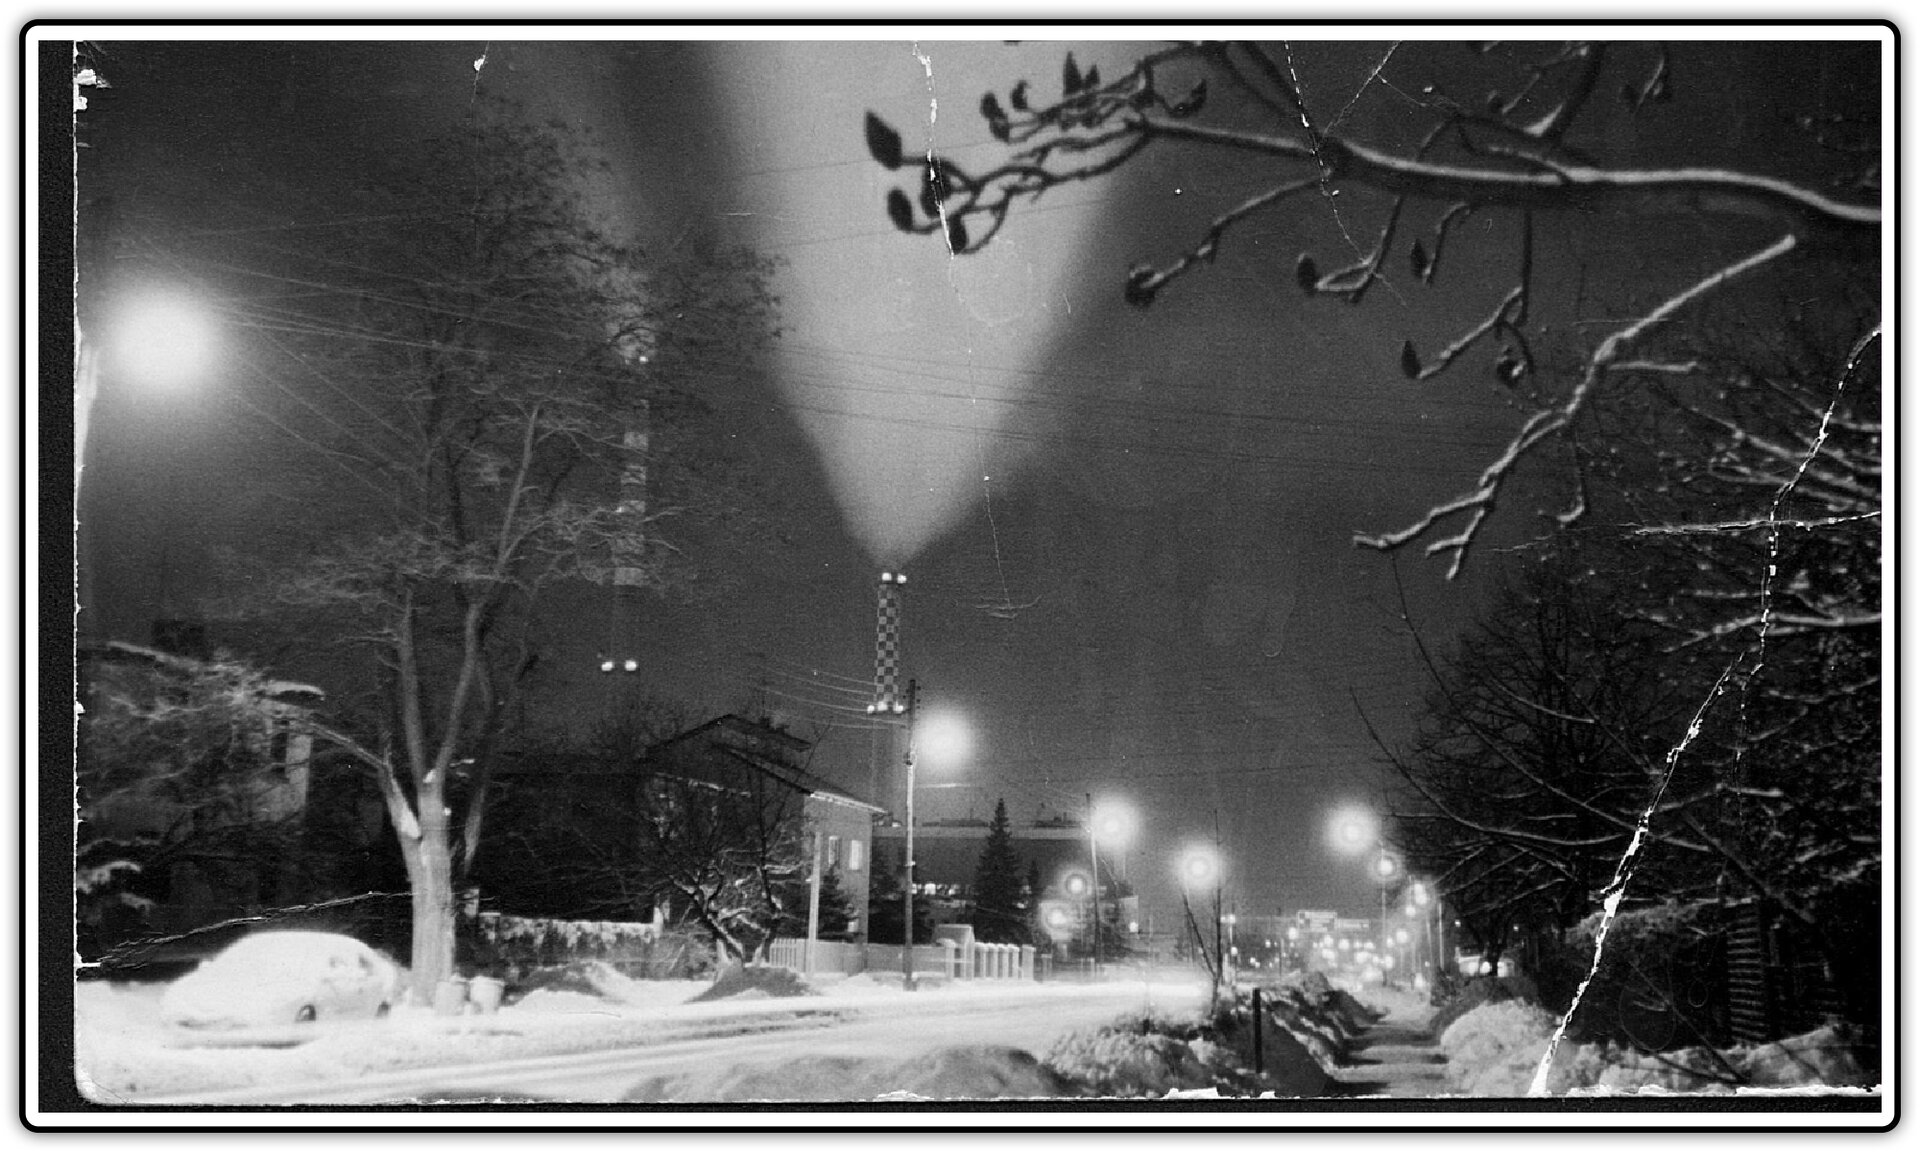 Fotografia przedstawiająca zaśnieżoną miejscowość nocą